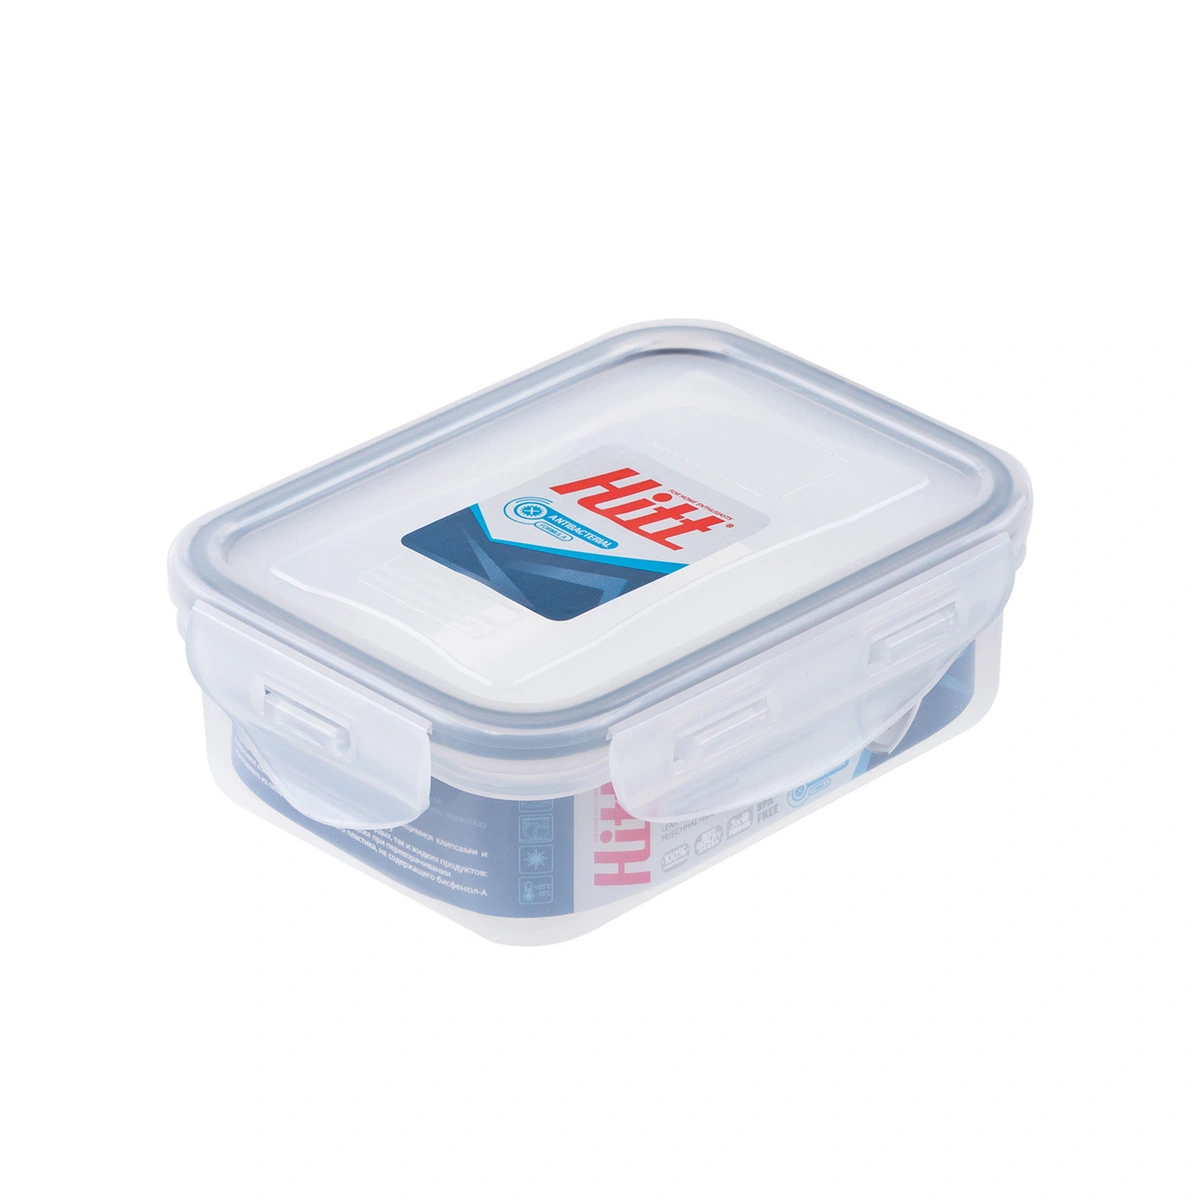 Контейнер герметичный антибактериальный Hitt 330 мл контейнер для хранения и стерилизации детских сосок и пустышек синий